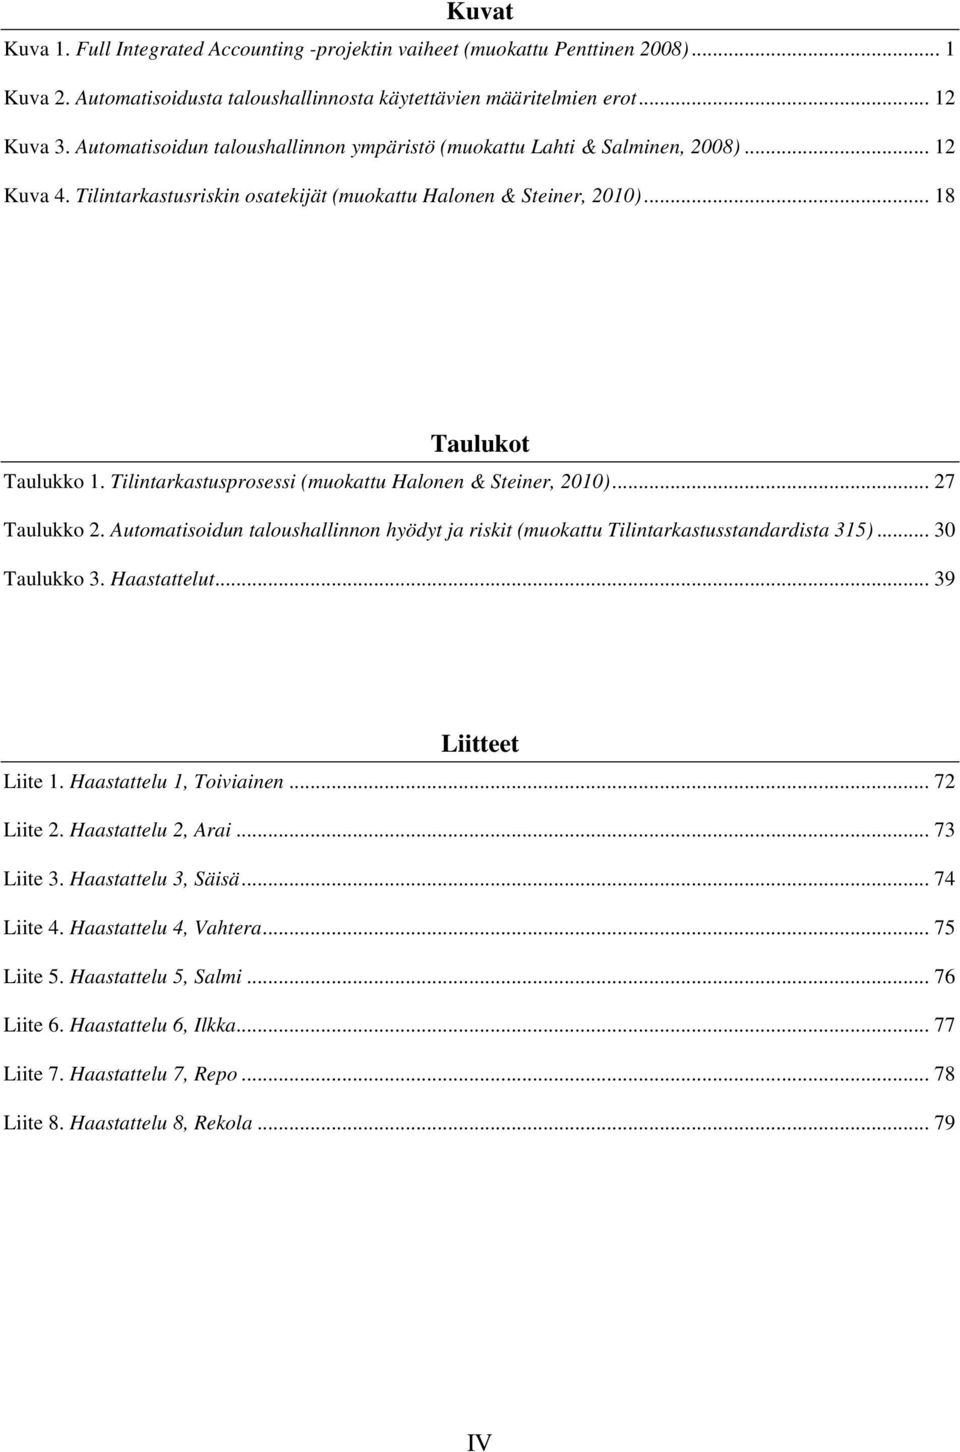 Tilintarkastusprosessi (muokattu Halonen & Steiner, 2010)... 27 Taulukko 2. Automatisoidun taloushallinnon hyödyt ja riskit (muokattu Tilintarkastusstandardista 315)... 30 Taulukko 3. Haastattelut.